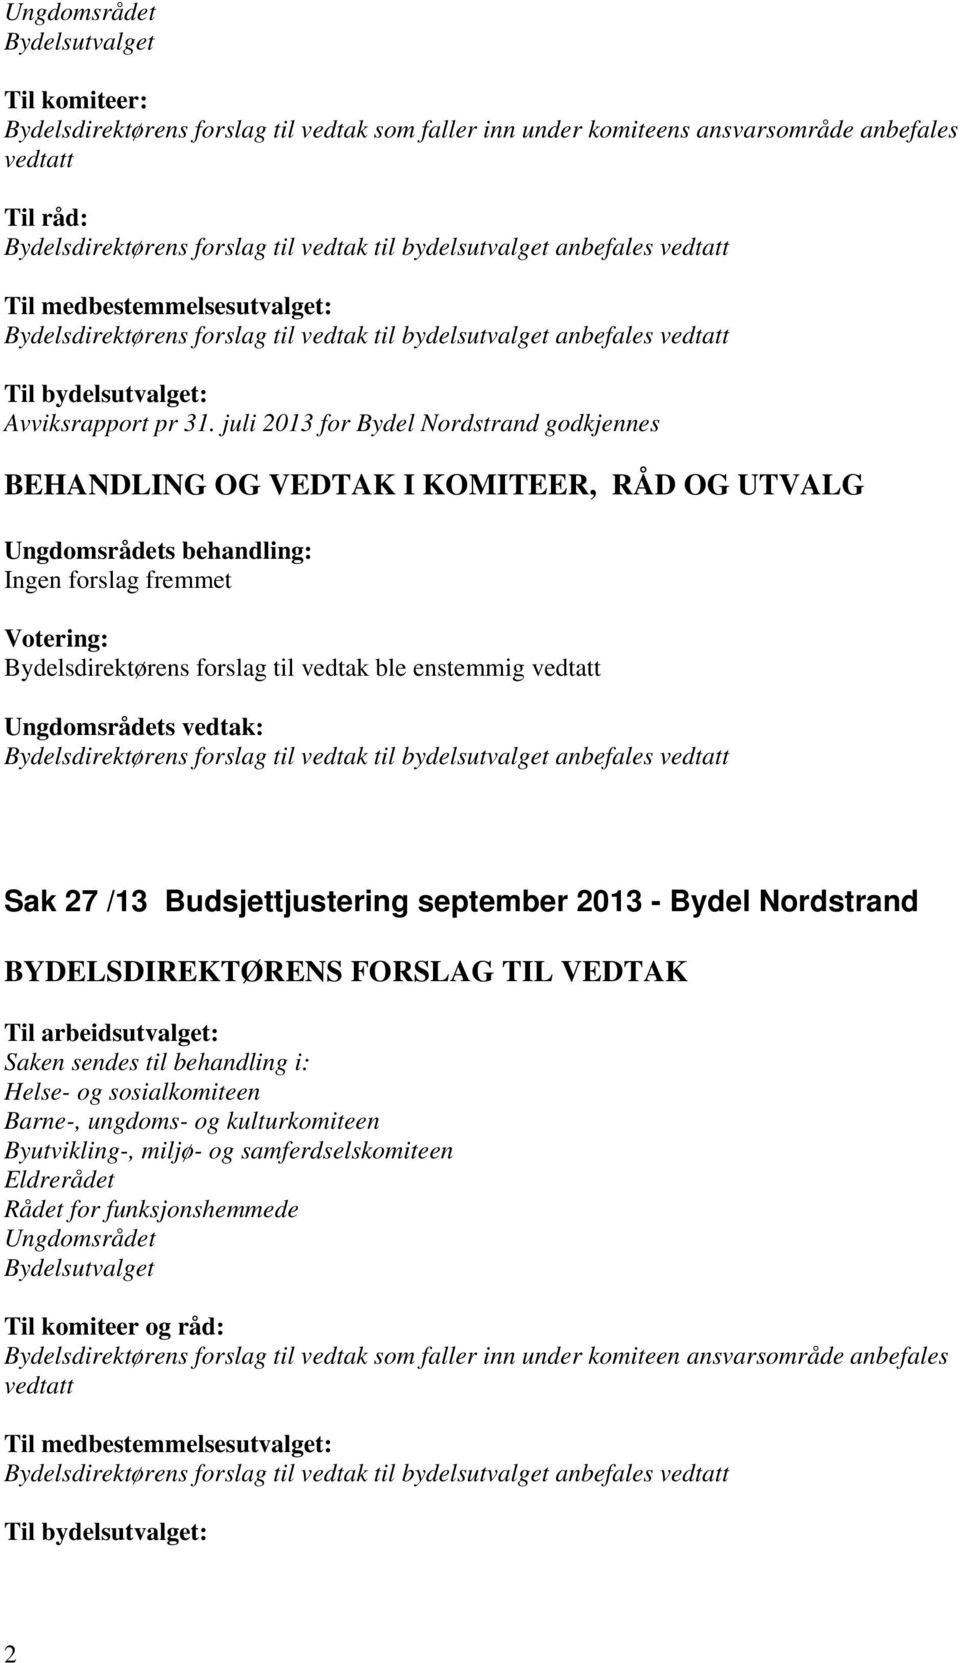 juli 2013 for Bydel Nordstrand godkjennes Sak 27 /13 Budsjettjustering september 2013 - Bydel Nordstrand Til arbeidsutvalget: Saken sendes til behandling i: Helse- og